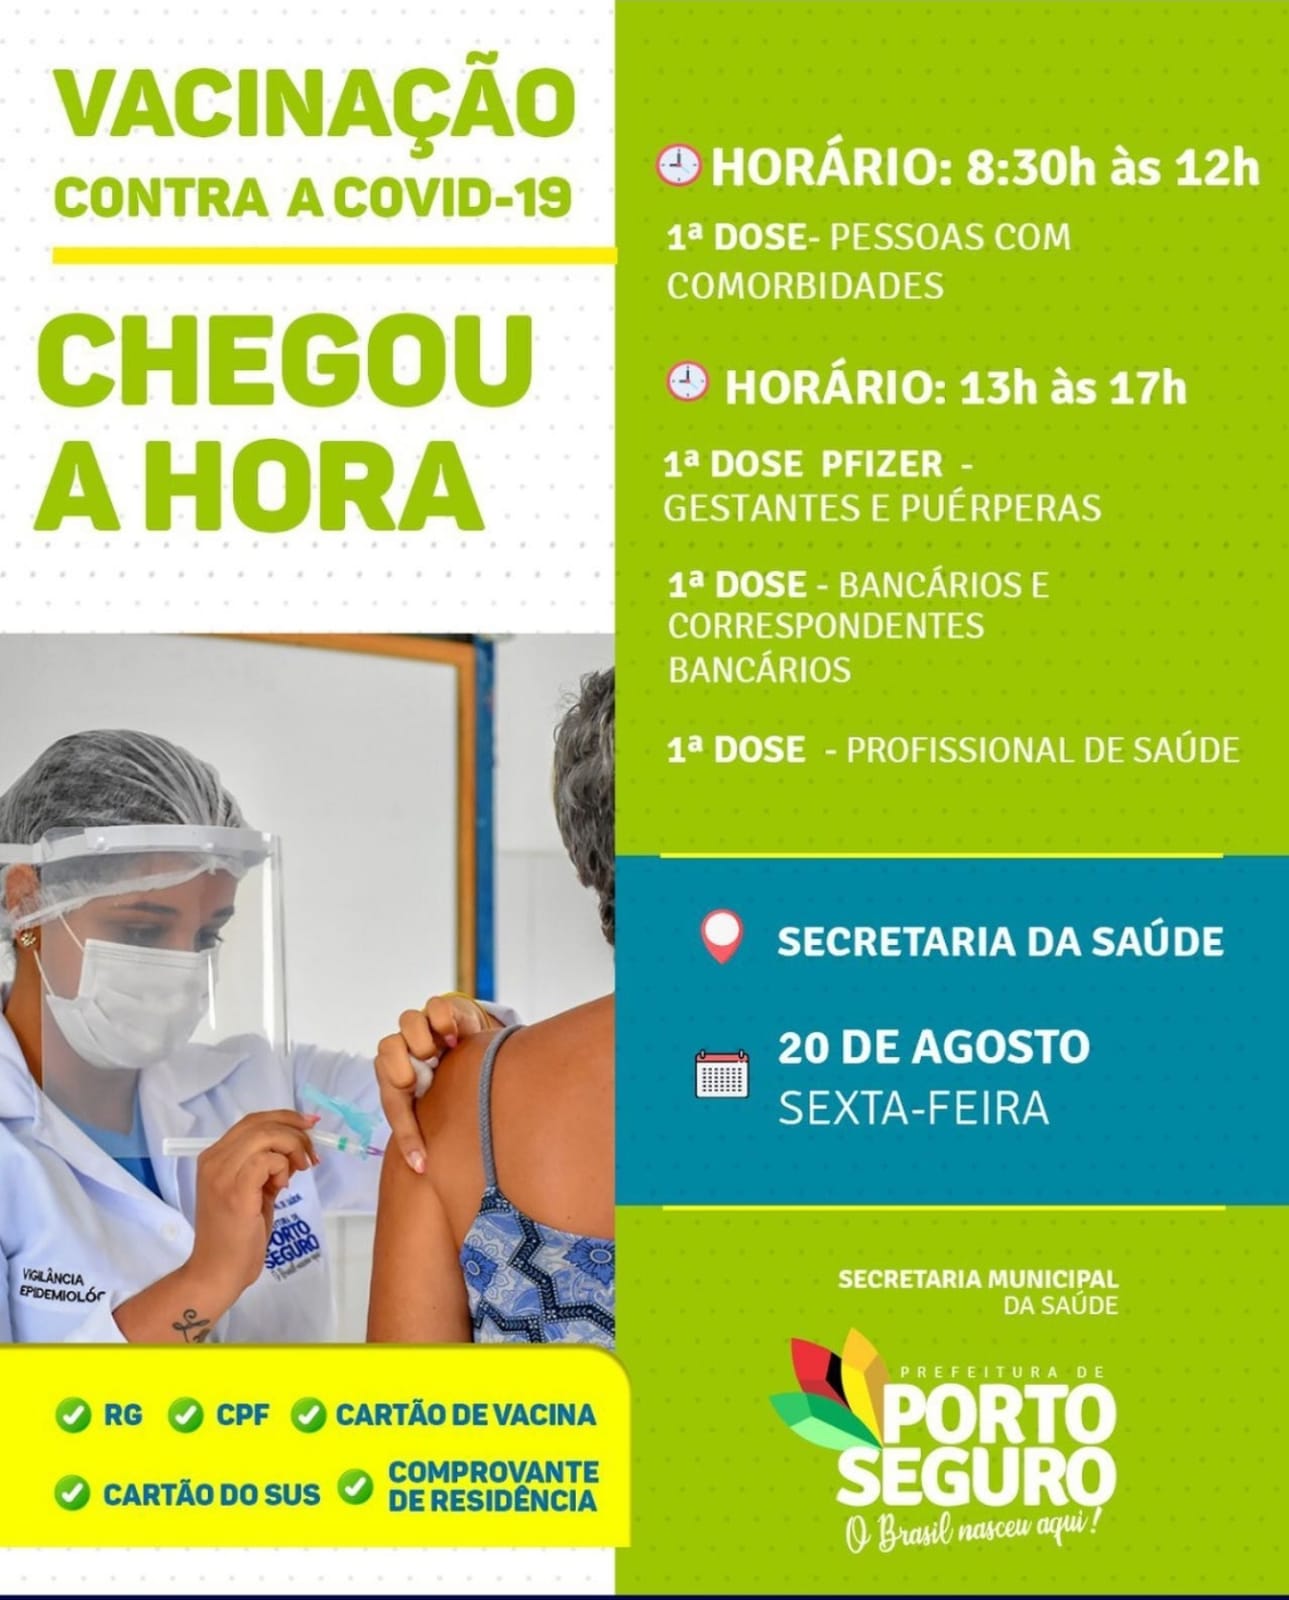 Porto Seguro: Cronograma de Vacinação contra a Covid-19 (20 de agosto) 10